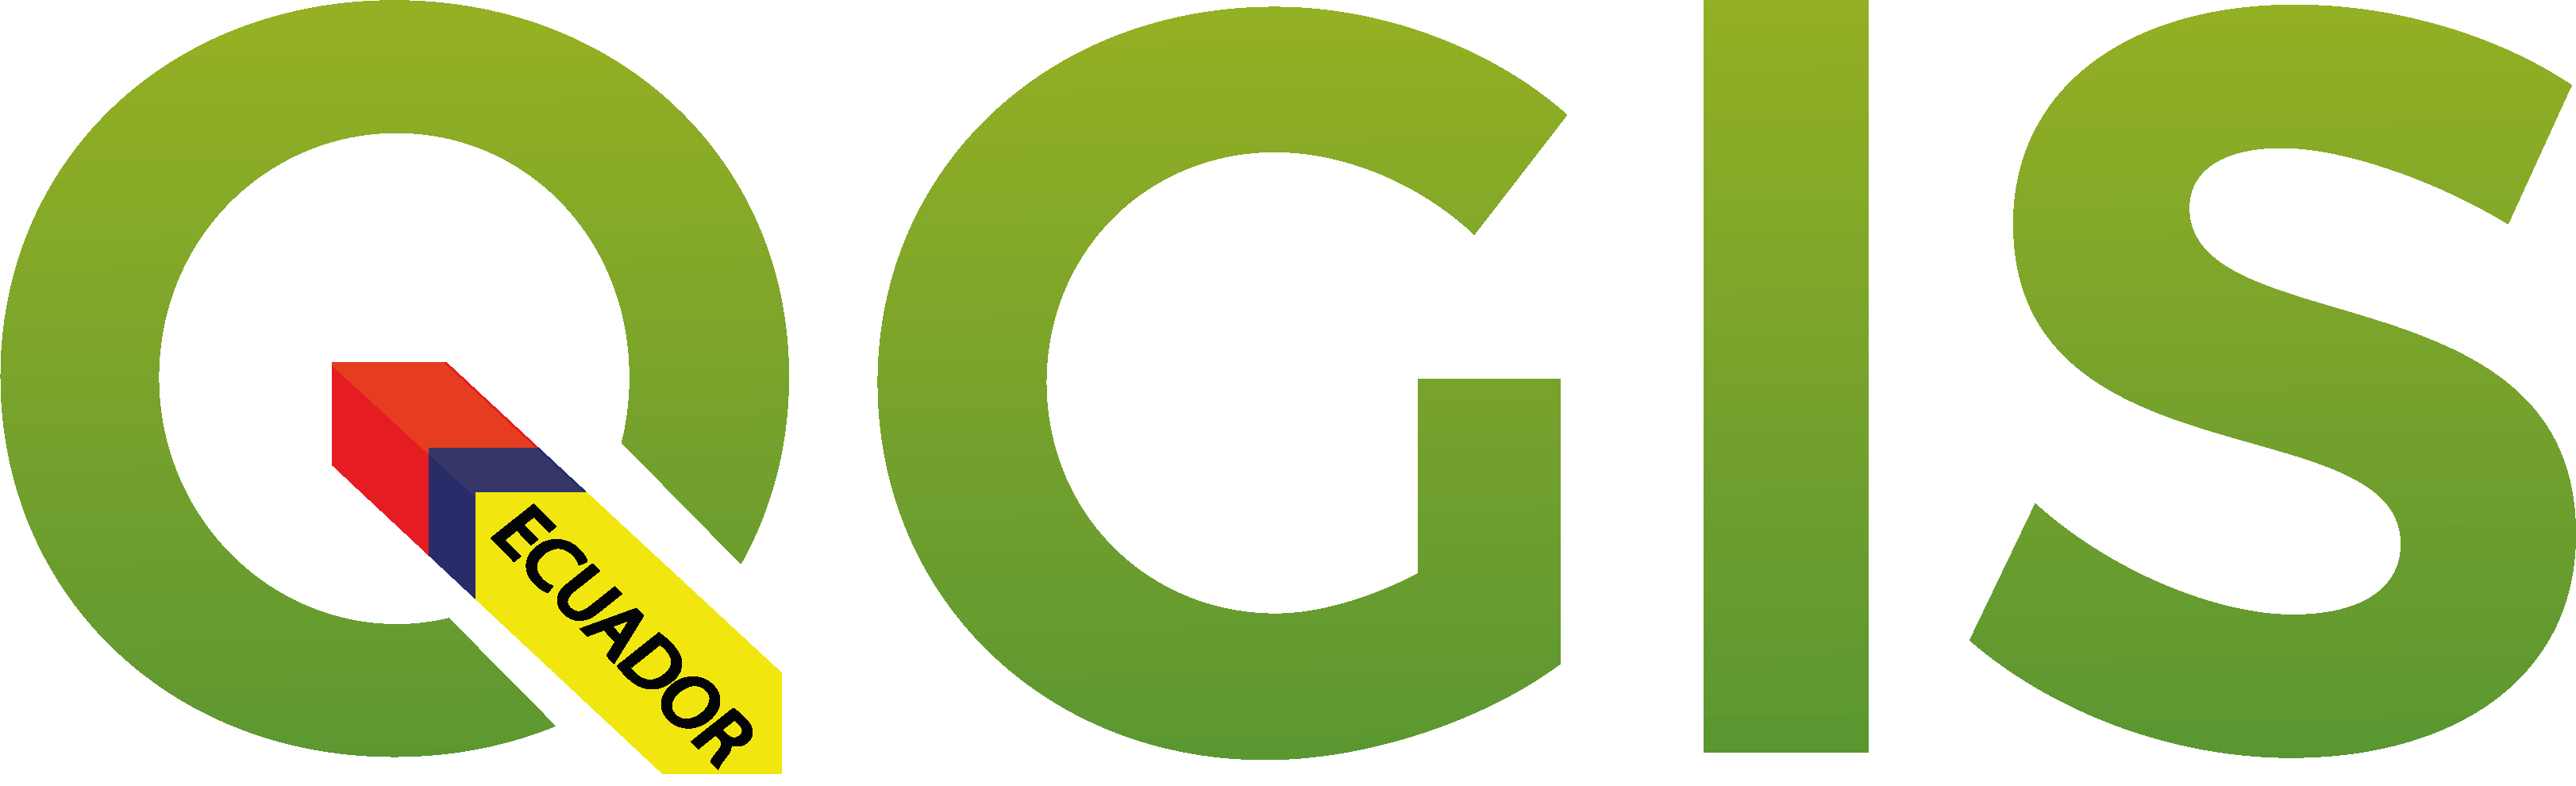 QGIS user group Ecuador